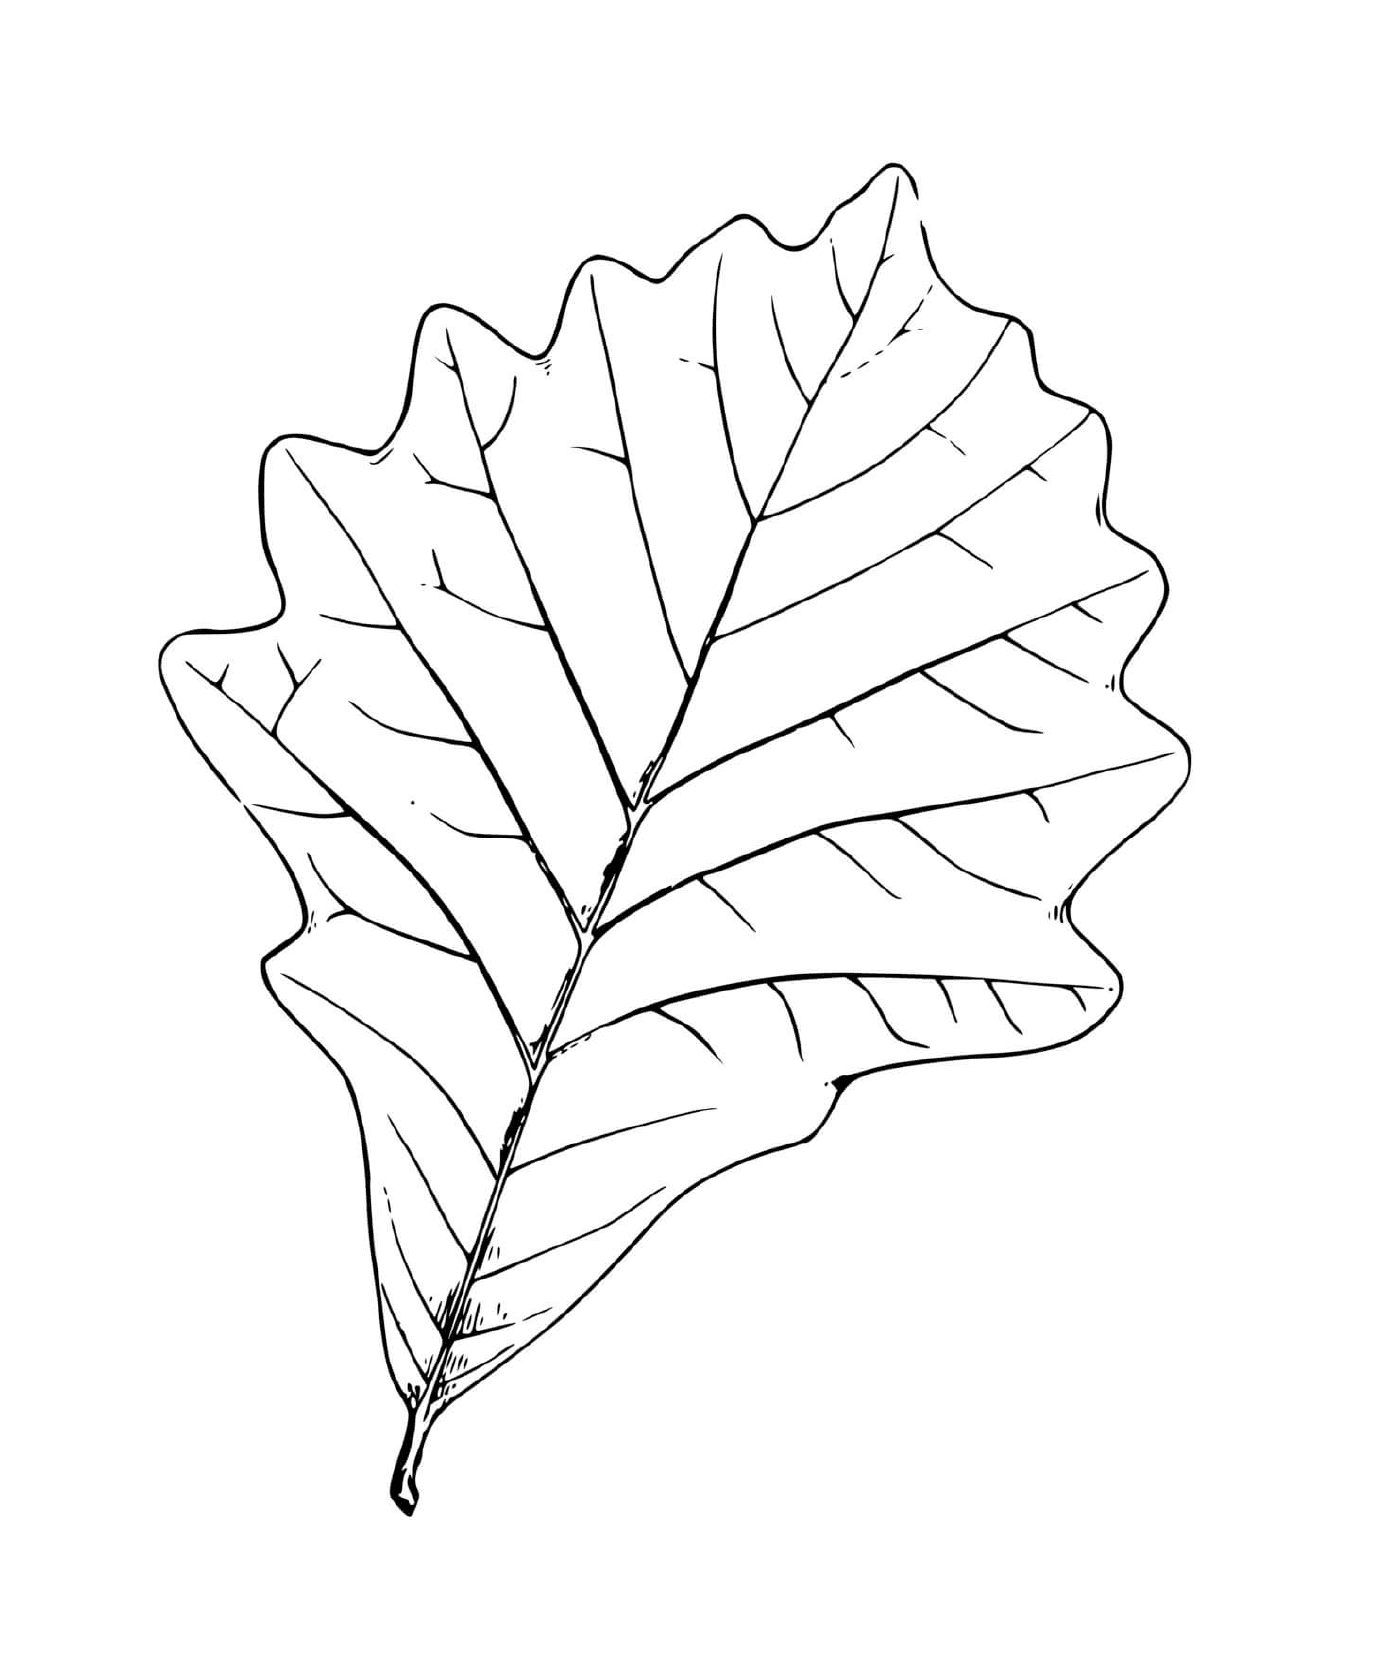  Oak leaf 